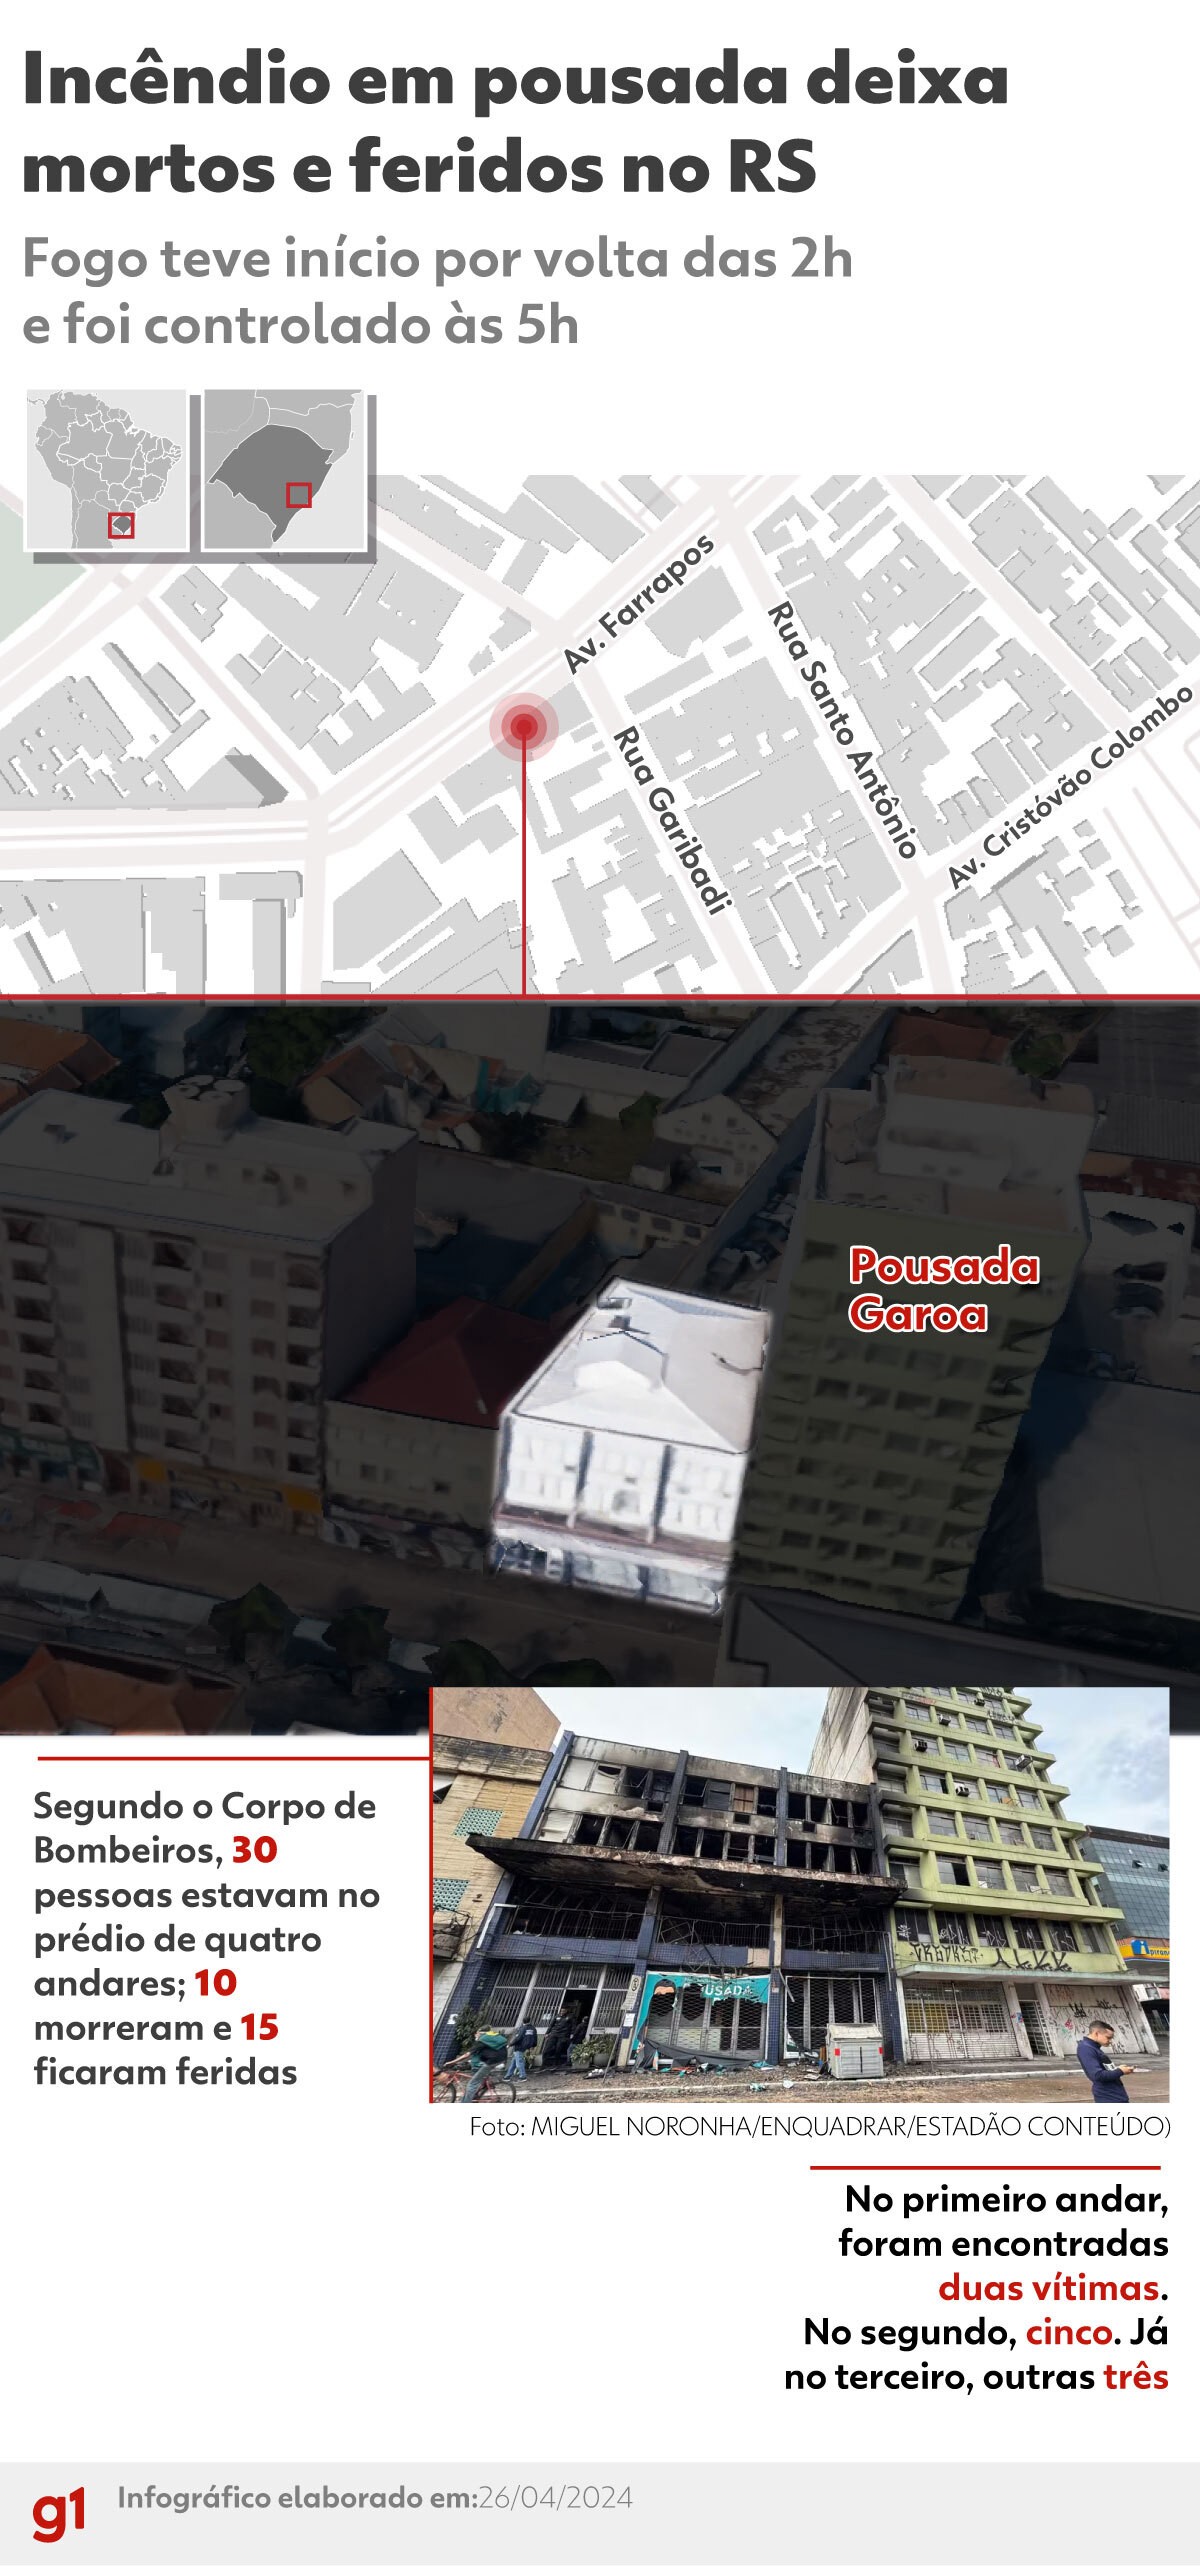 'Hipótese de incêndio criminoso', diz coordenador da Defesa Civil sobre fogo em pousada de Porto Alegre